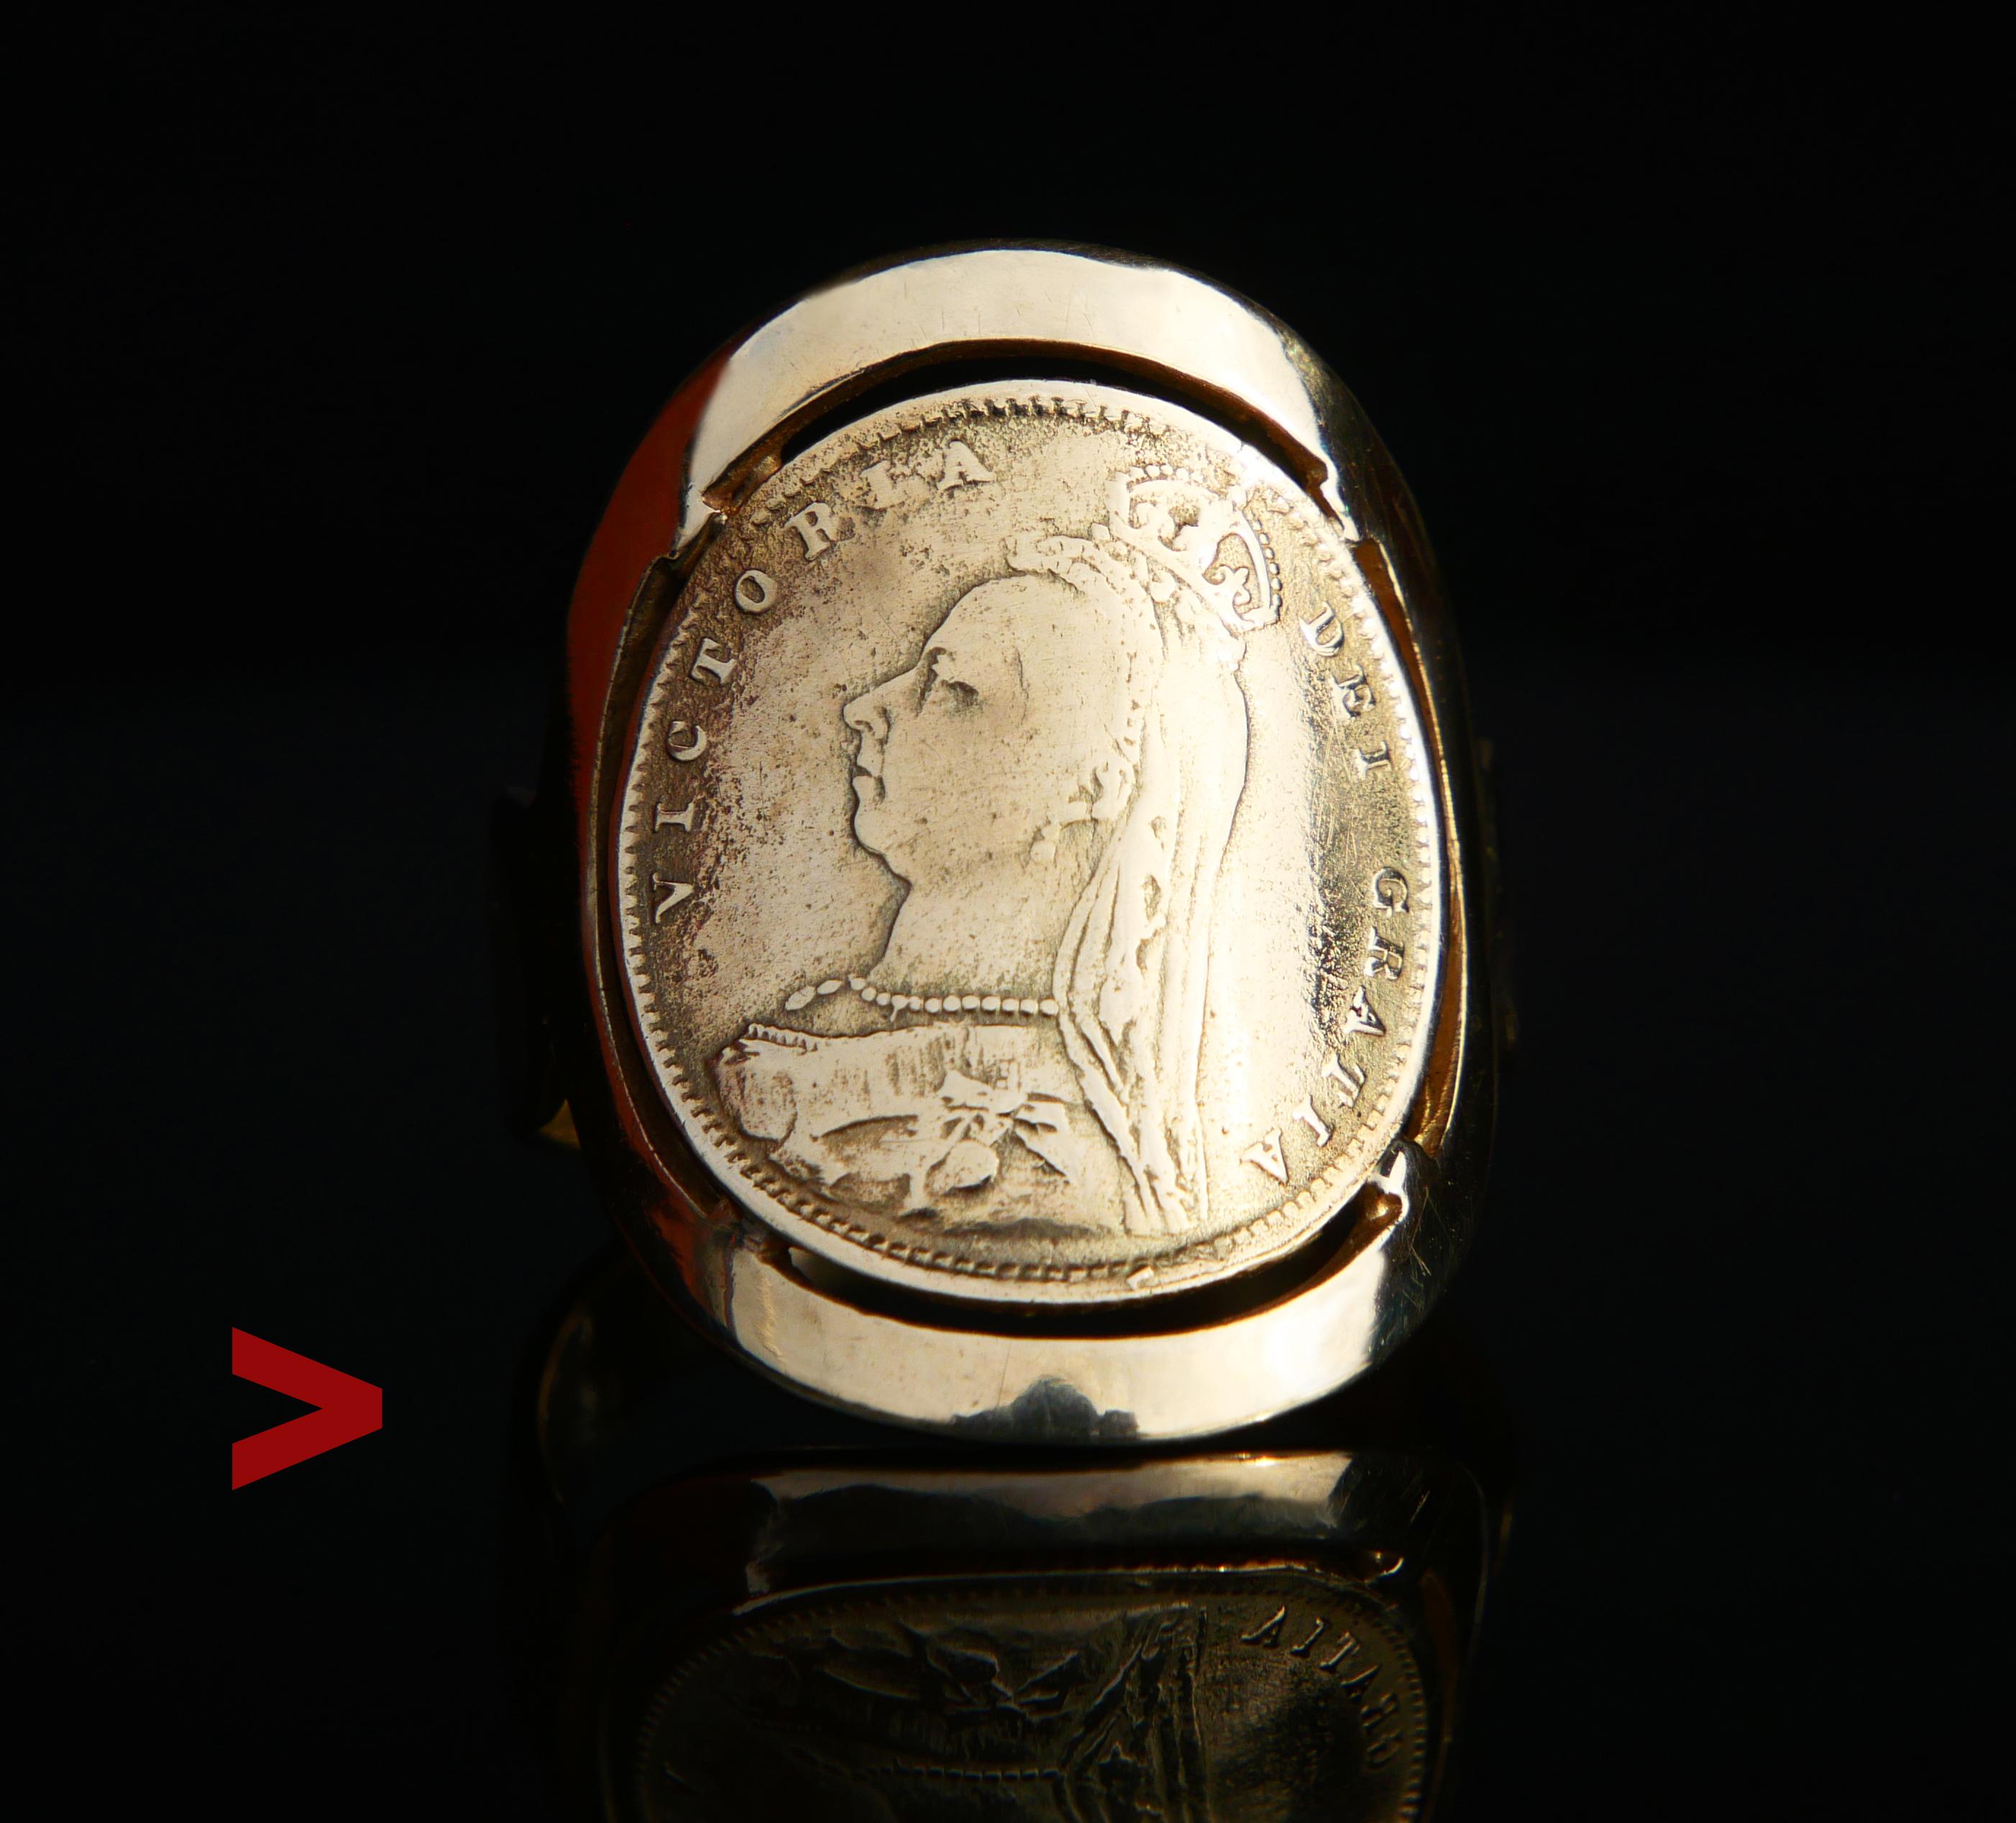 Antike Münze Ring gekonnt von einer Kopie der 1887 British Gold Half Sovereign Münze und breite Band gefertigt. Sowohl das Band als auch die Münze sind aus massivem 14K Gold (getestet). Gestempelt 585.

Er wurde der Form eines menschlichen Fingers